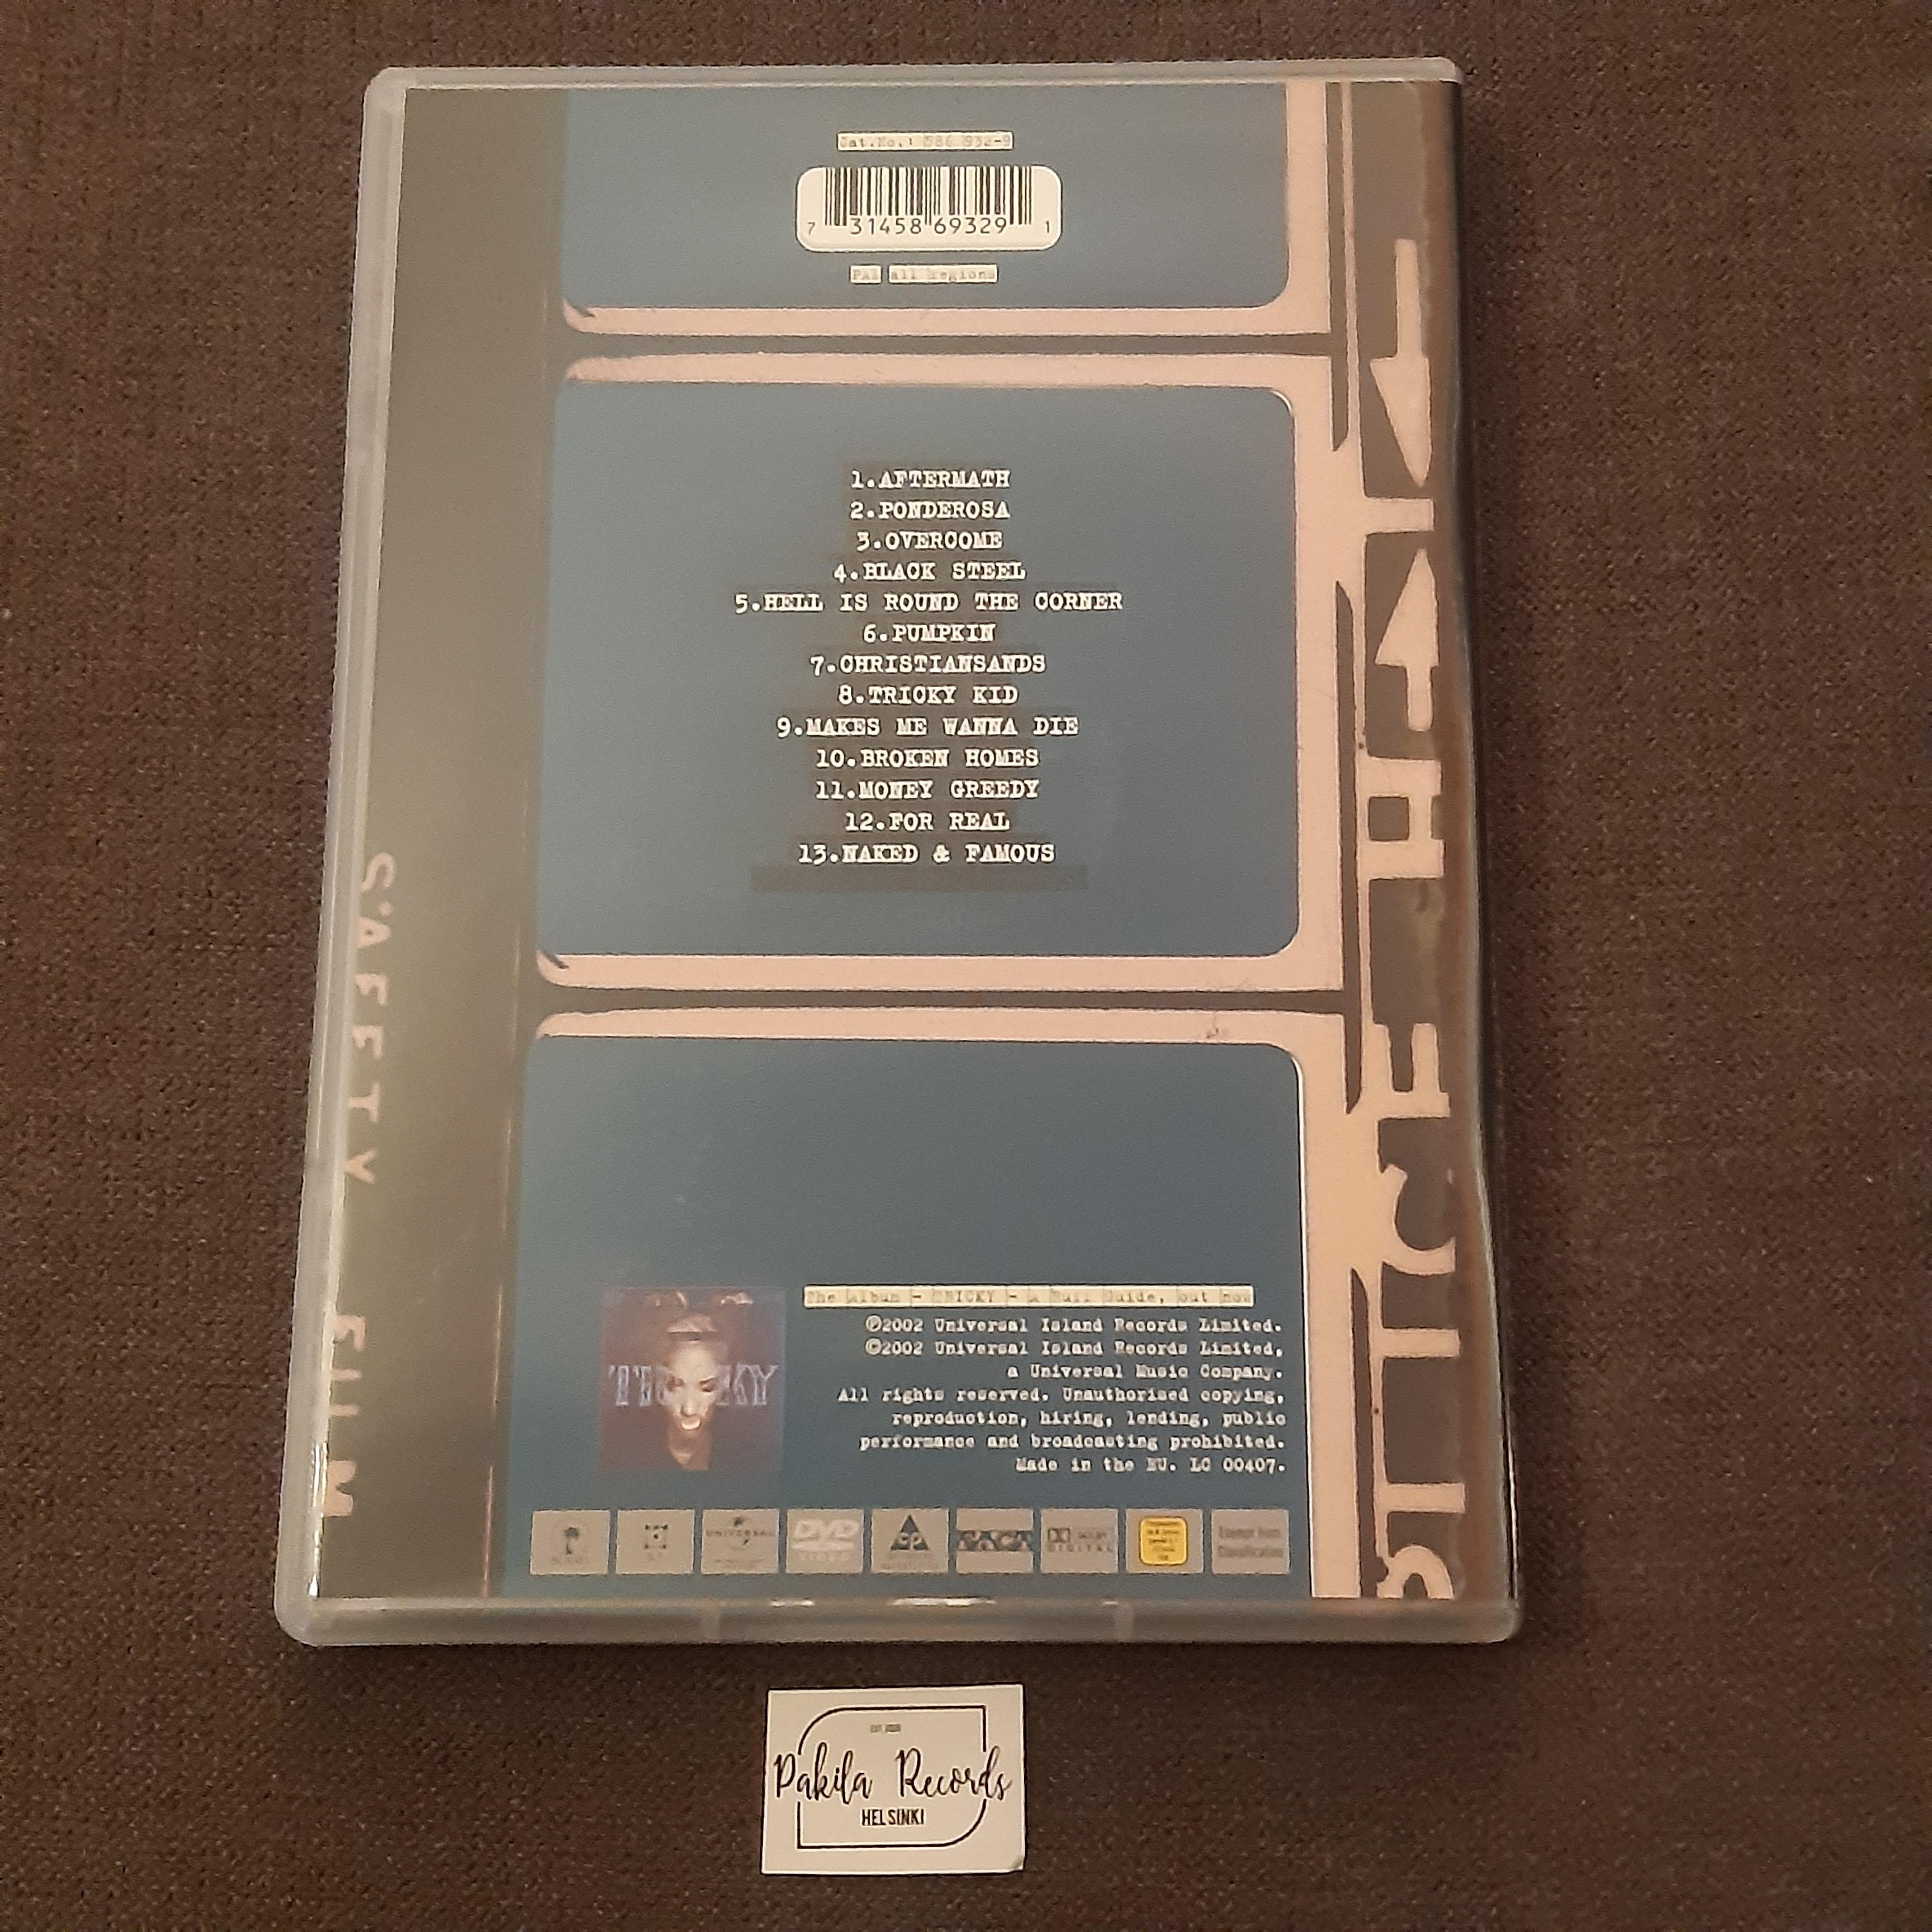 Tricky - A Ruff Guide - DVD (käytetty)